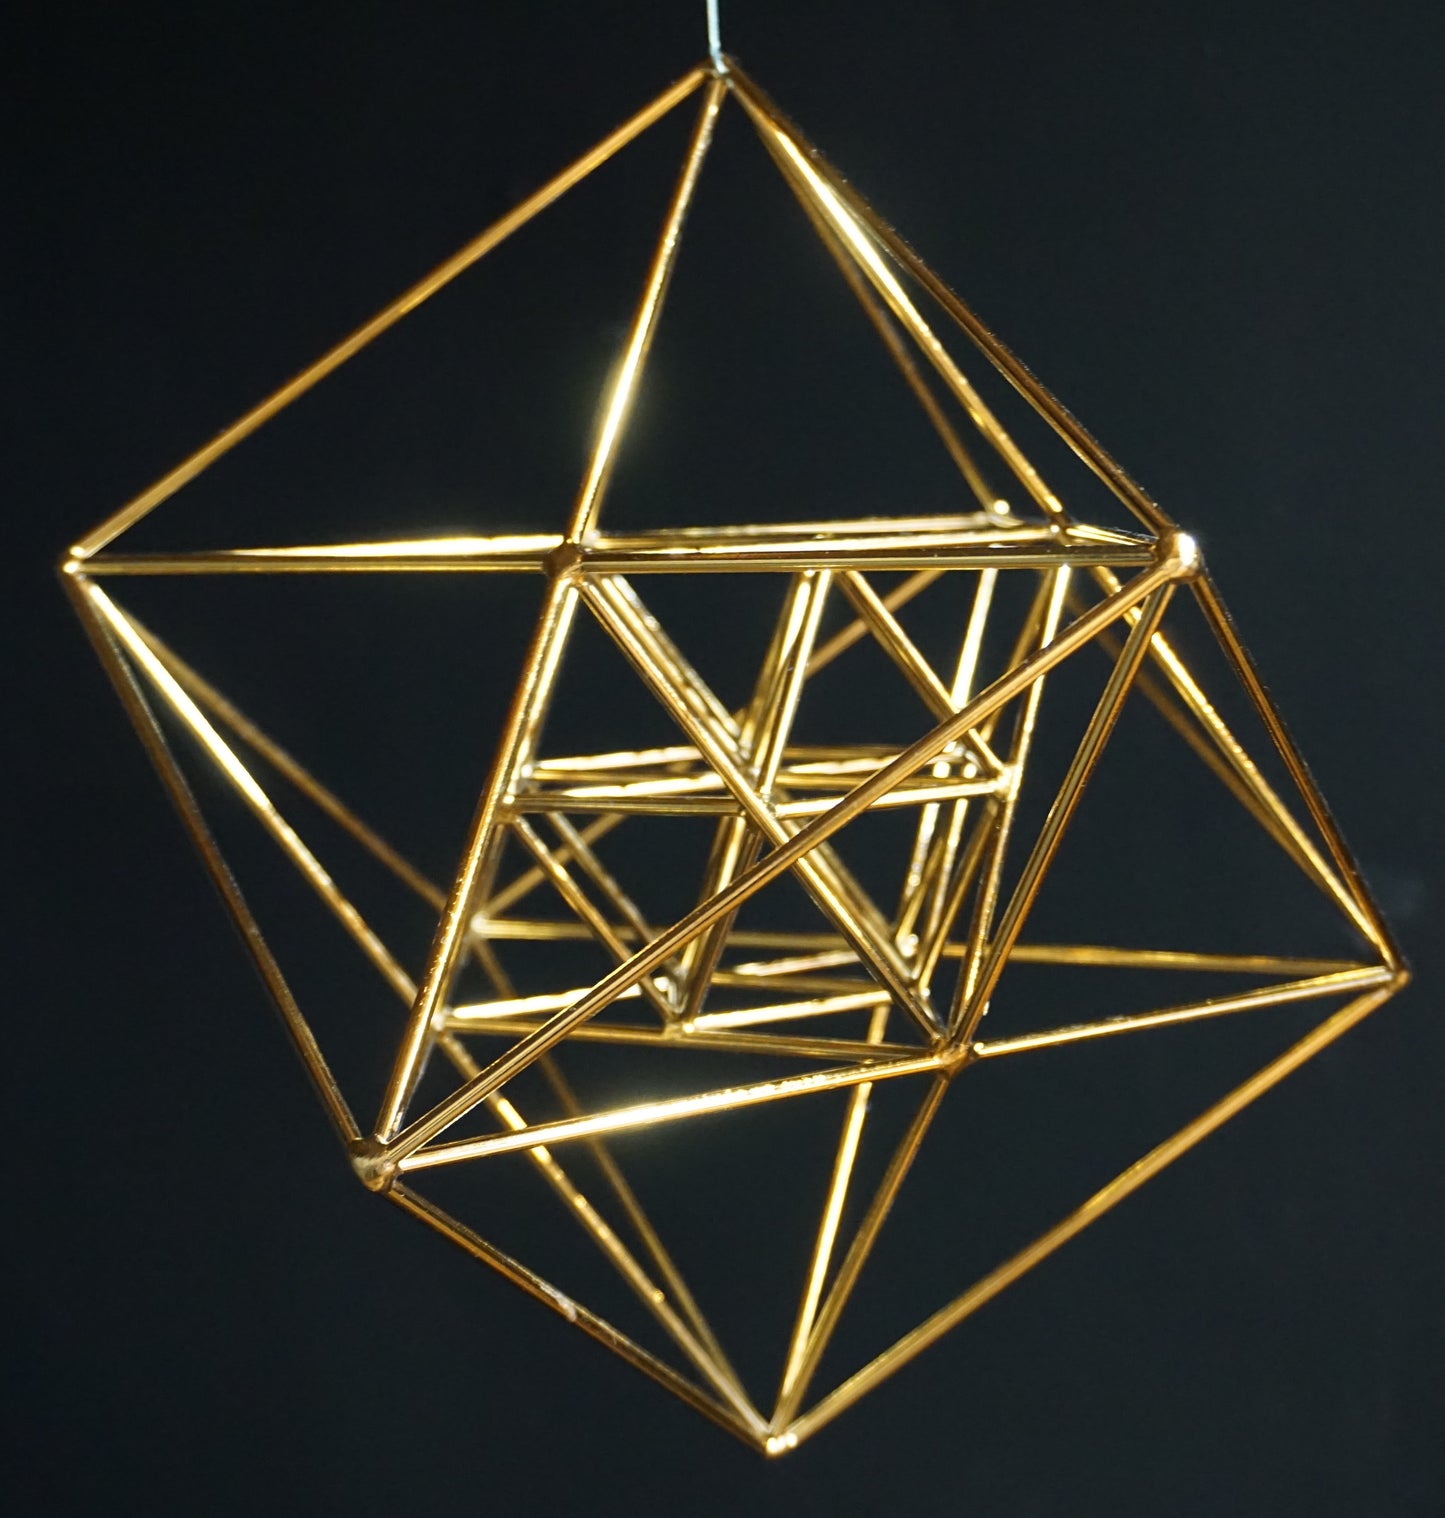 Ref.ST0026 - 3D Metatron cube + cuboctahedron vector